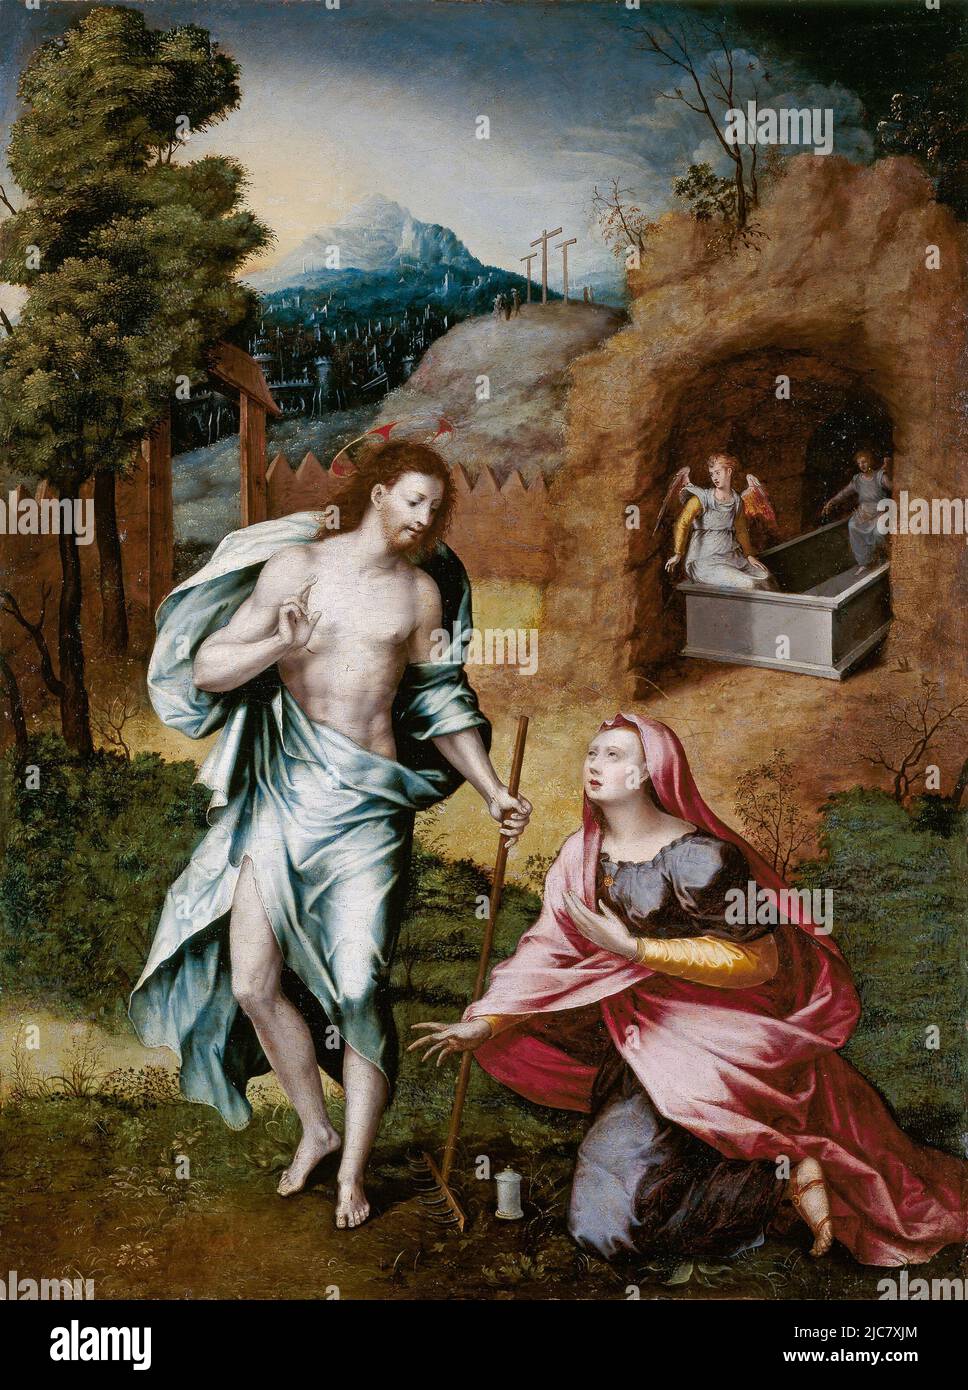 Noli me tangere von Jerónimo Cosida (1510–1592). Dieses Gemälde zeigt den Moment, in dem Maria Magdelene den auferstandenen Jesus wiedererkennt. Sie greift nach ihm, aber er bittet sie, ihn nicht zu berühren (Noli me tangere), da er noch nicht in den Himmel aufgestiegen ist. Stockfoto